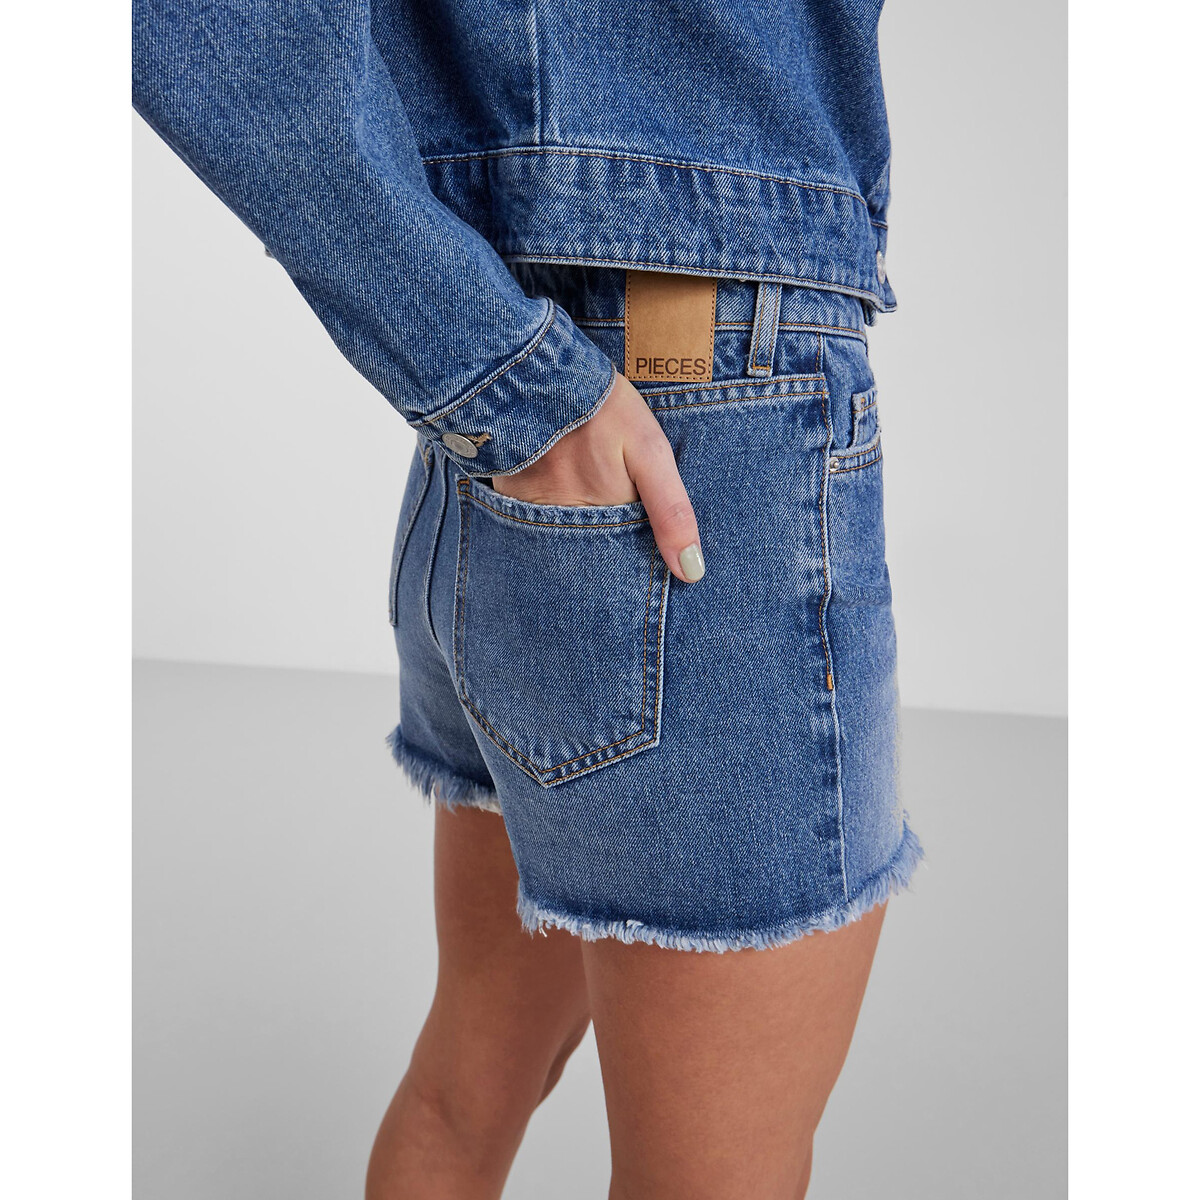 Шорты Из джинсовой ткани L синий LaRedoute, размер L - фото 2